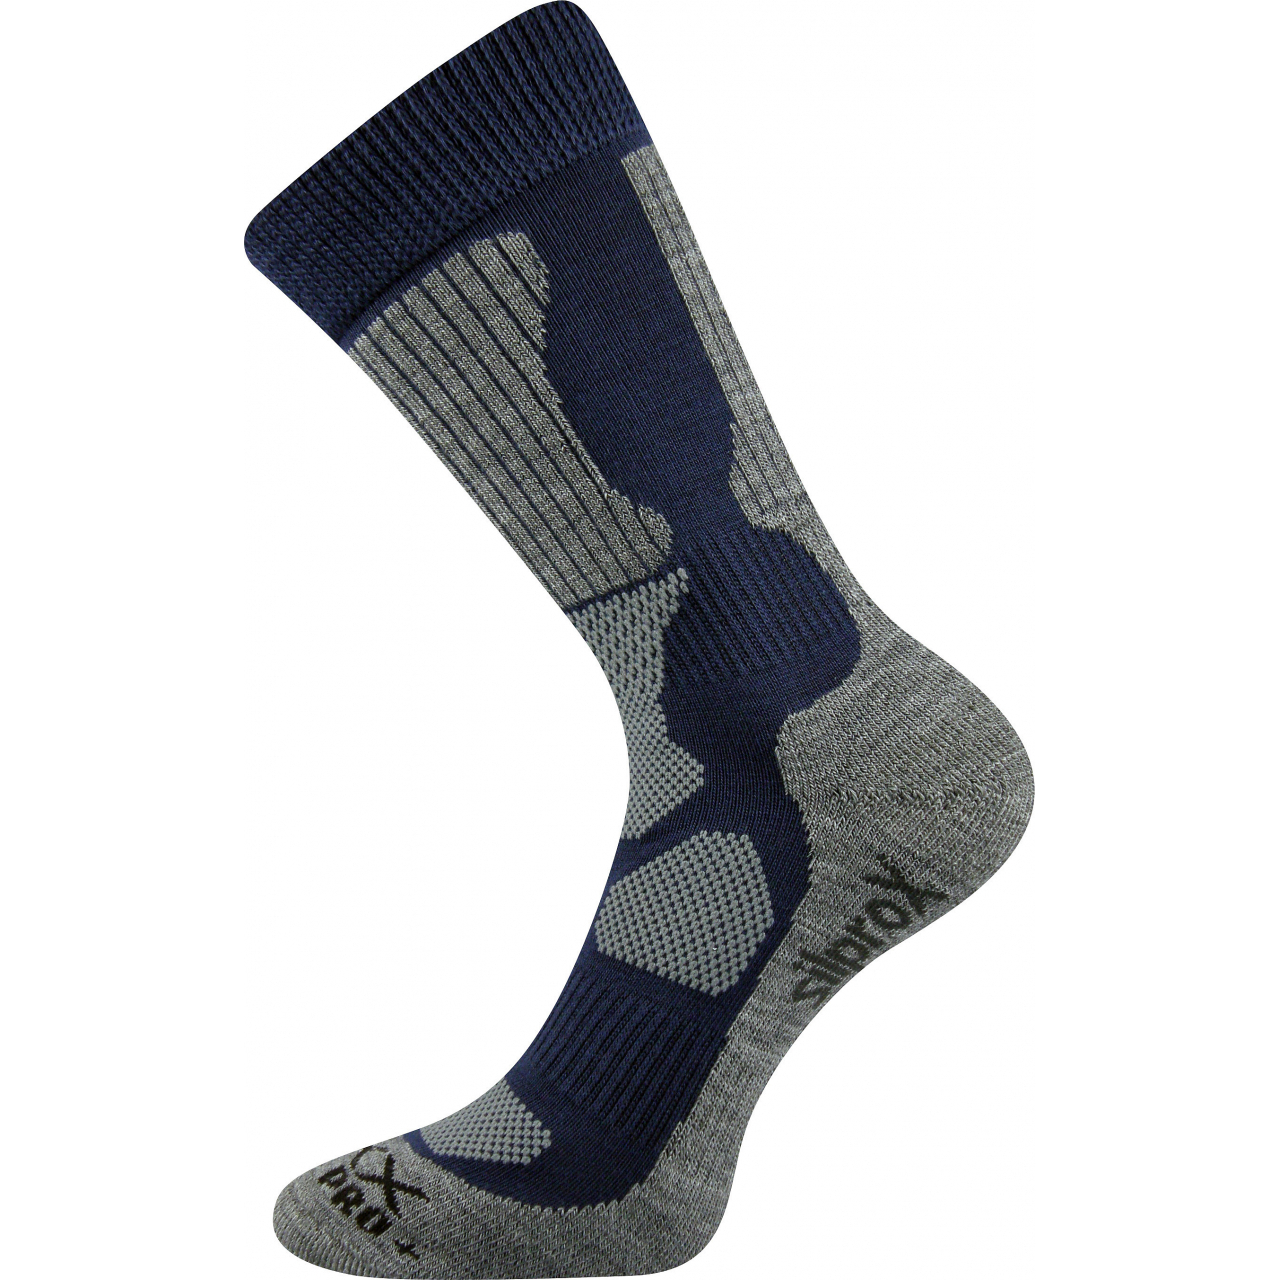 Ponožky sportovní Voxx Etrex - navy-šedé, 39-42